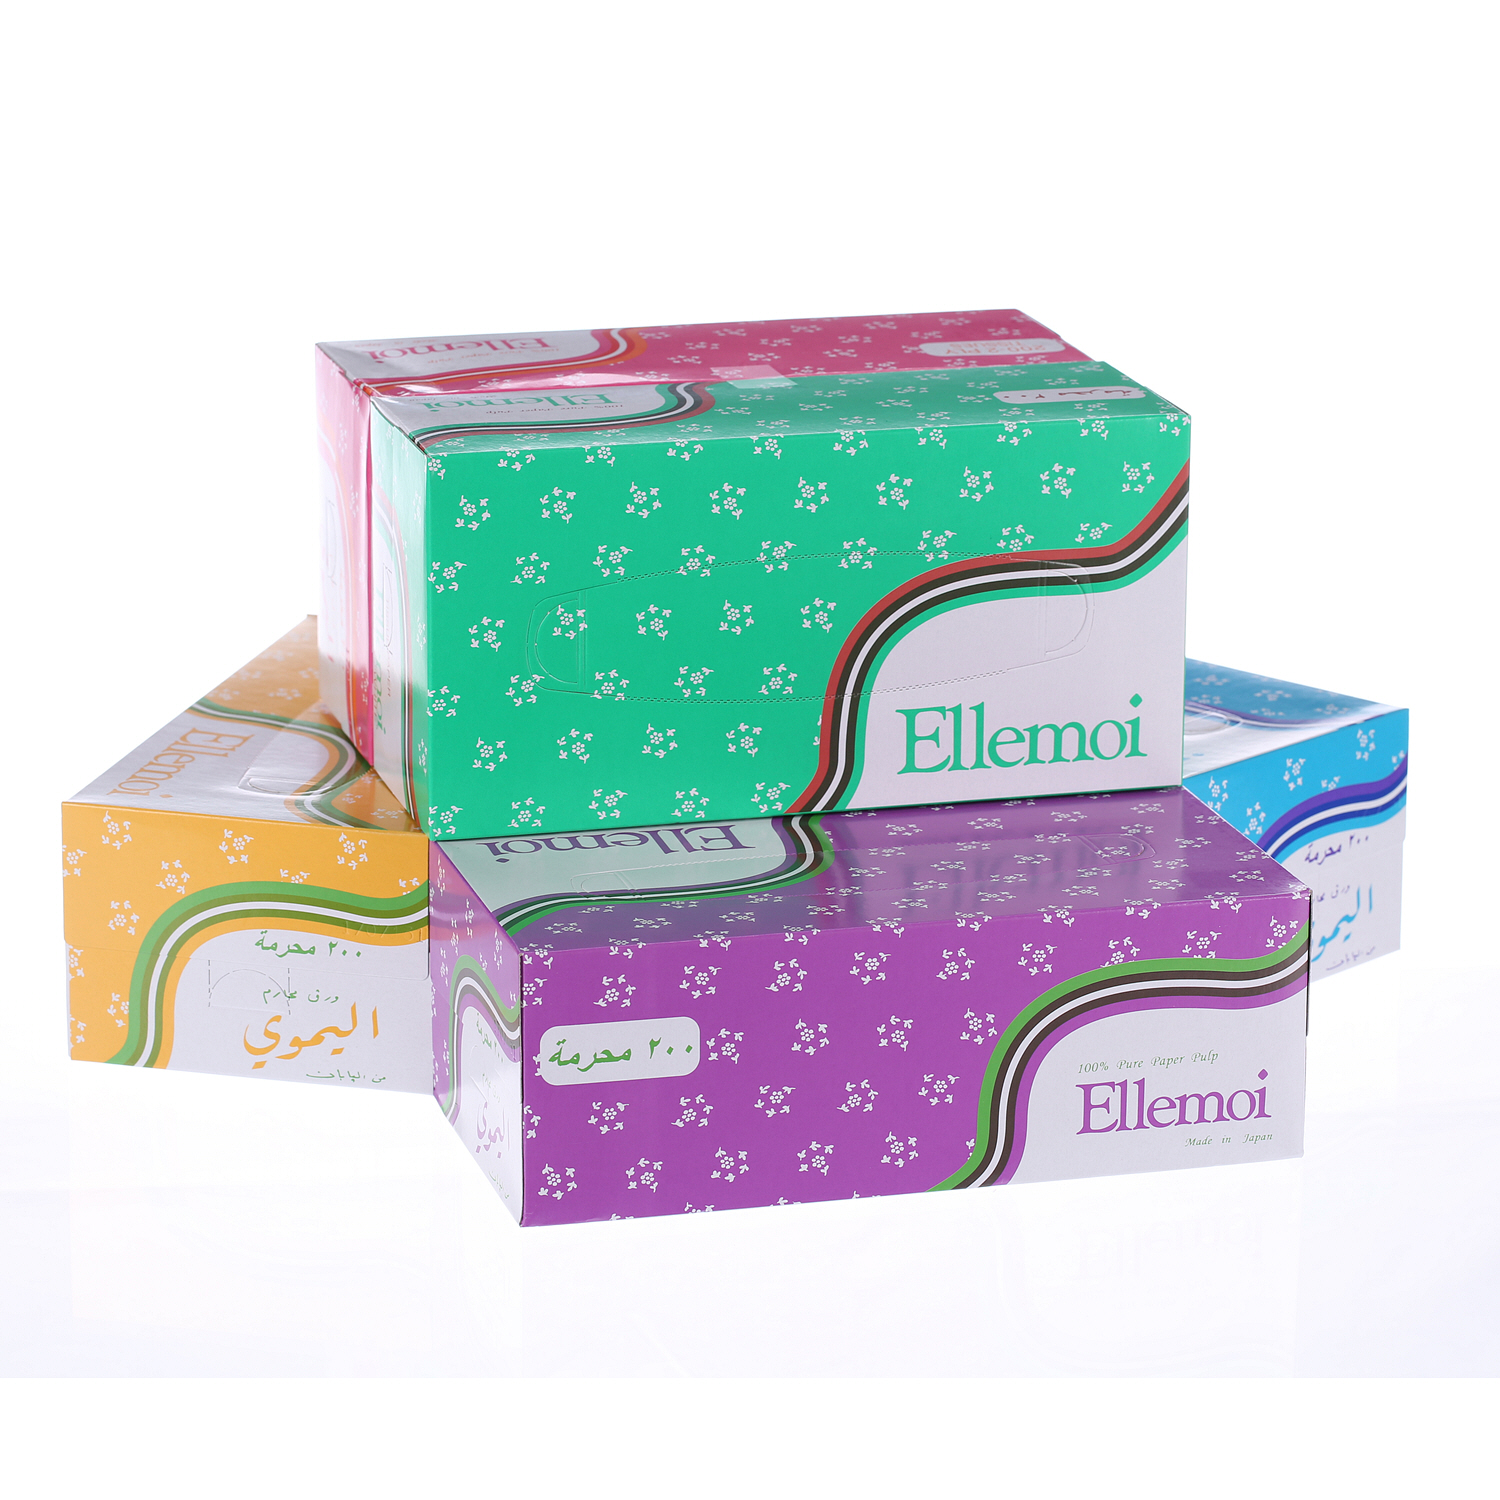 Ellemoi Facial Tissue 200 × 2 Ply (Pack of 6)